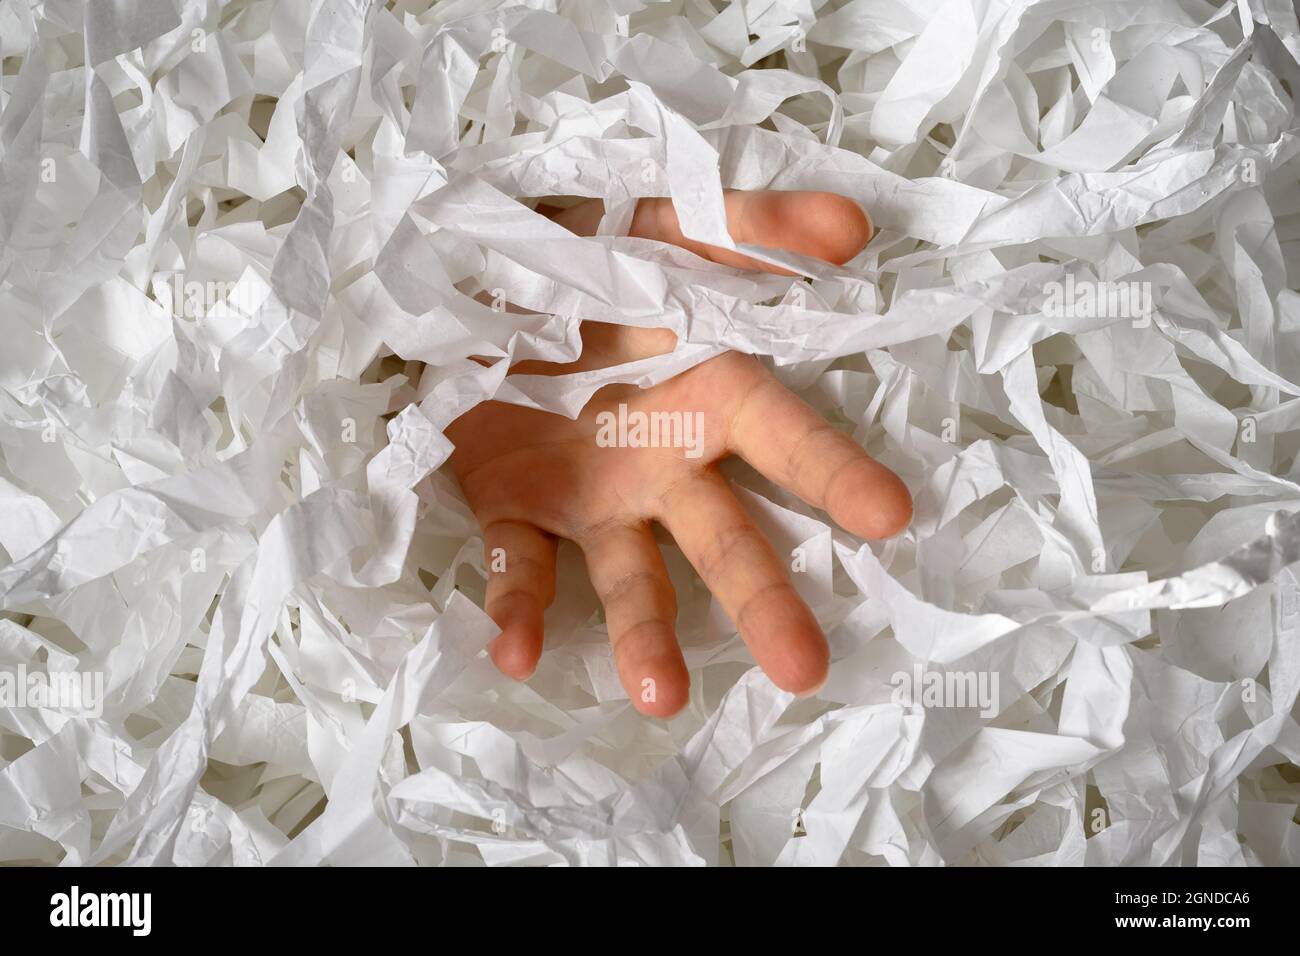 La mano se extiende desde el montón de papel triturado, el hombre hundiéndose en el montón de confeti blanco. Alguien ahogándose en basura de papel, basura o llenadora de cajas. Concepto Foto de stock